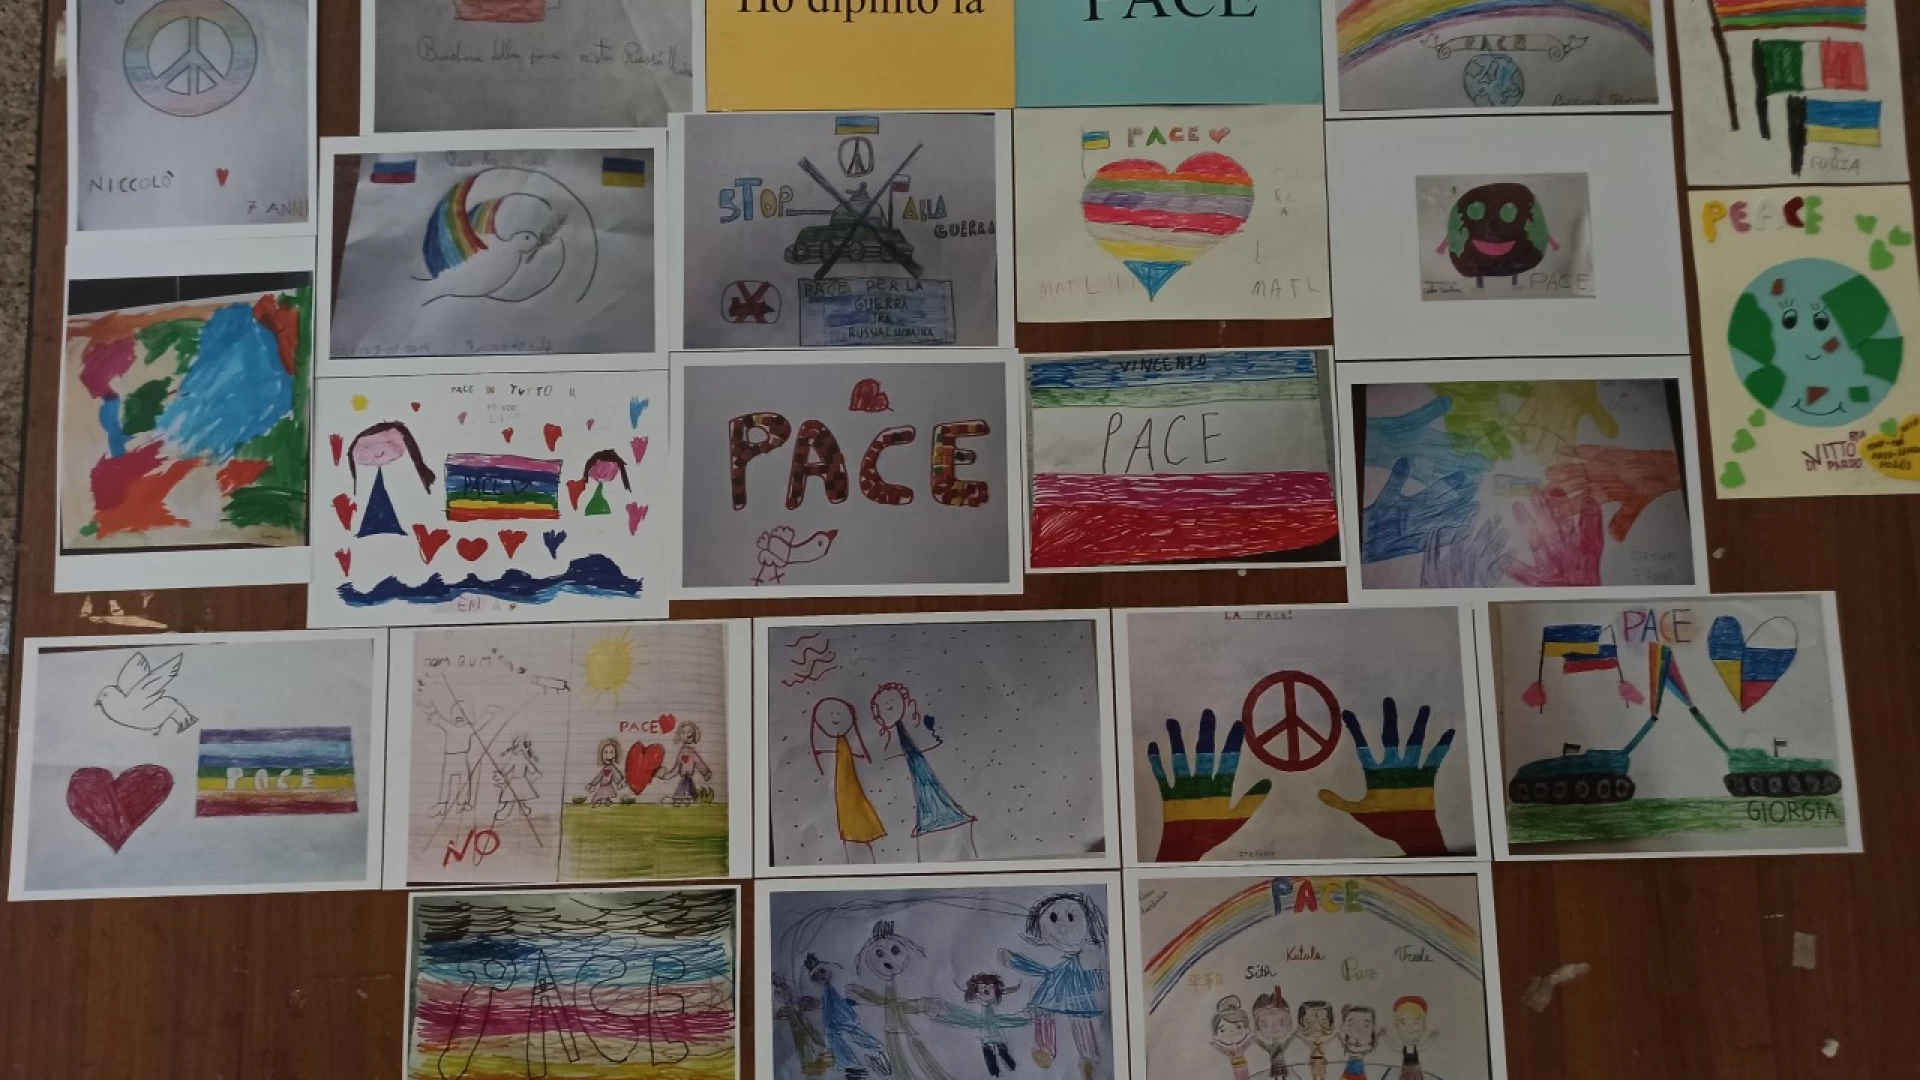 Isernia: la Biblioteca Provinciale Mommsen propone il contest “Ho Dipinto la Pace”.